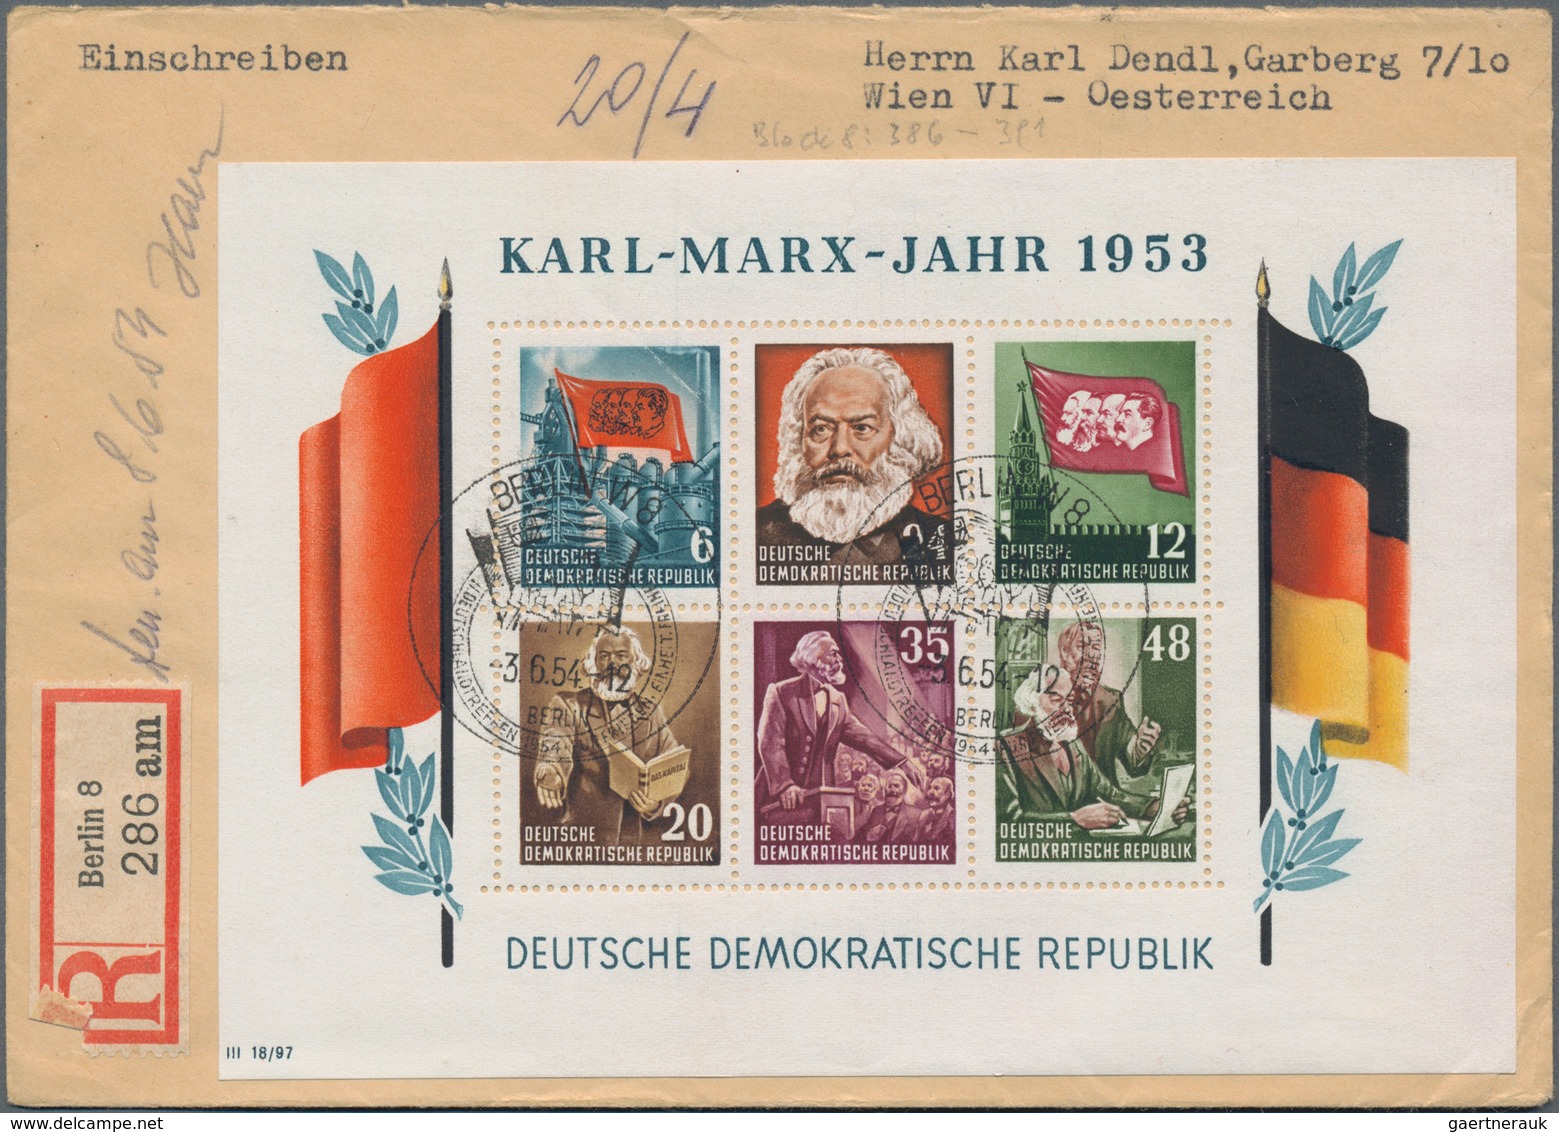 DDR: 1949/1990, außergewöhnliche Sammlung in neun Ringalben sehr individuell und lebhaft gesammelt m